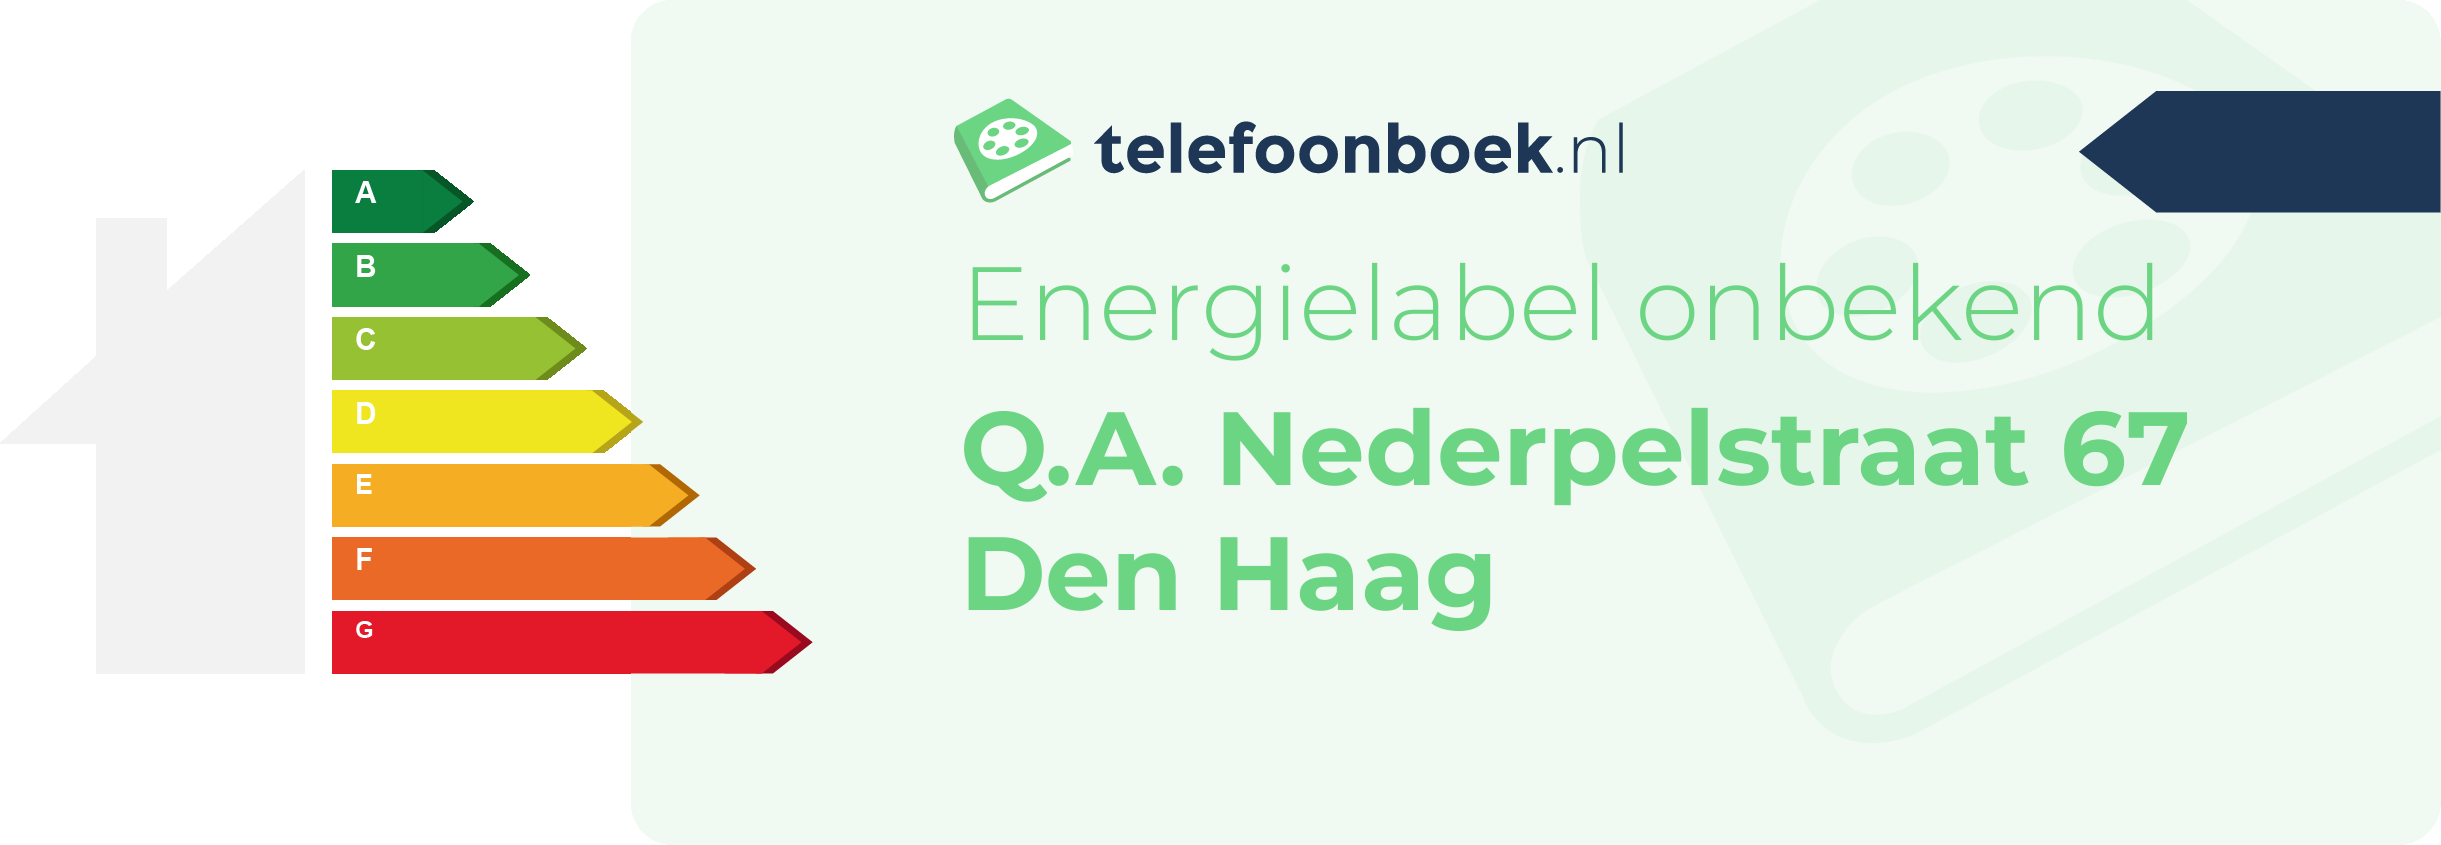 Energielabel Q.A. Nederpelstraat 67 Den Haag